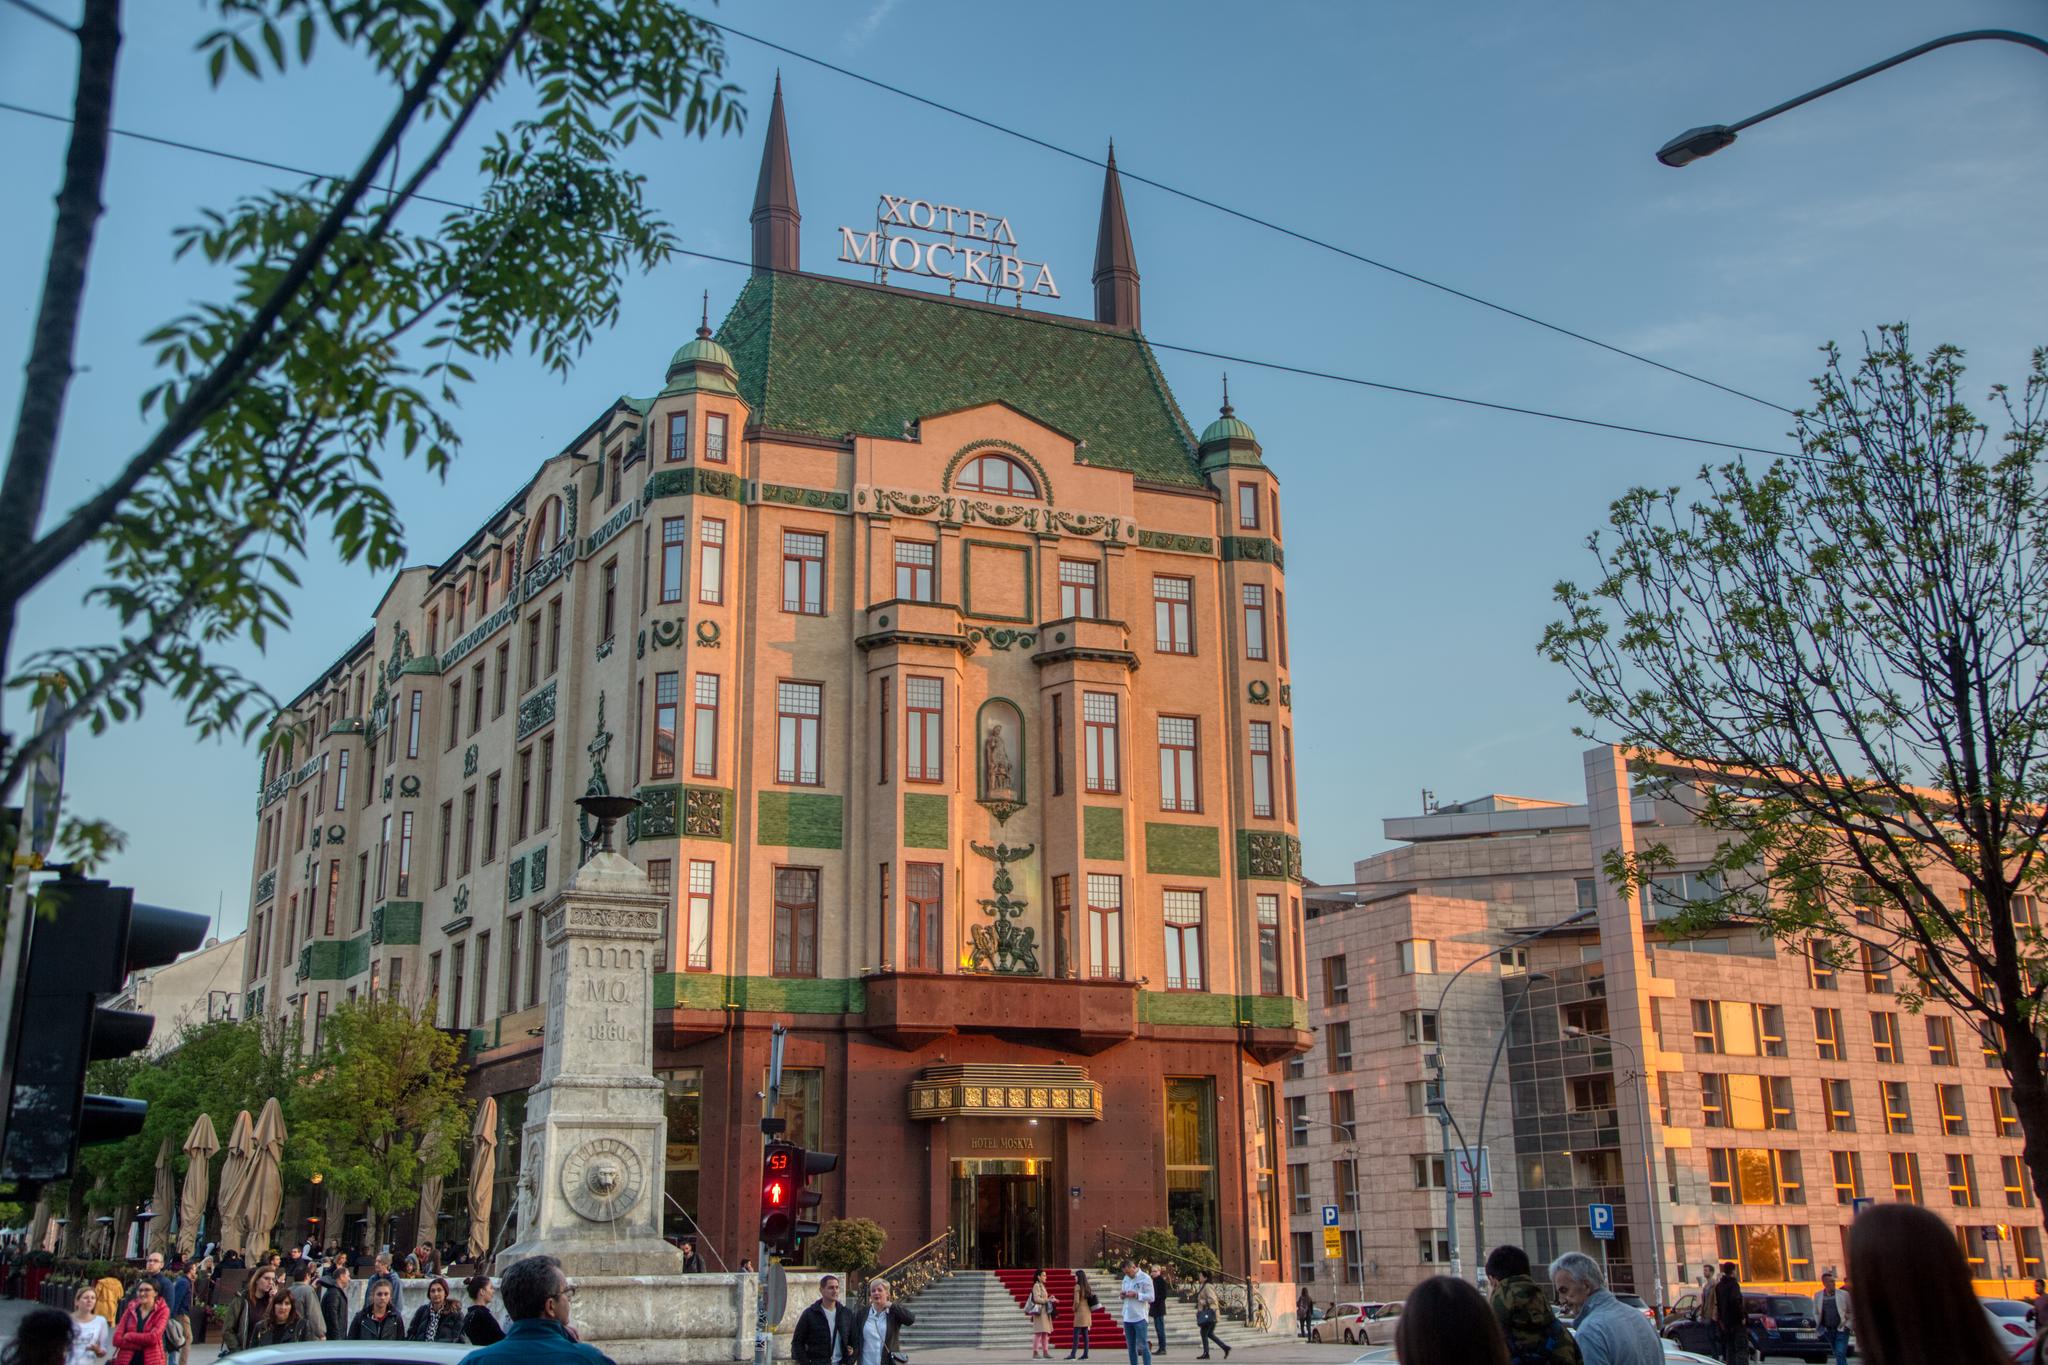 Hotell Moskva er et ikonisk sted og ligger midt i Beograd sentrum. Her får man følelsen av å reise tilbake til sovjettiden.